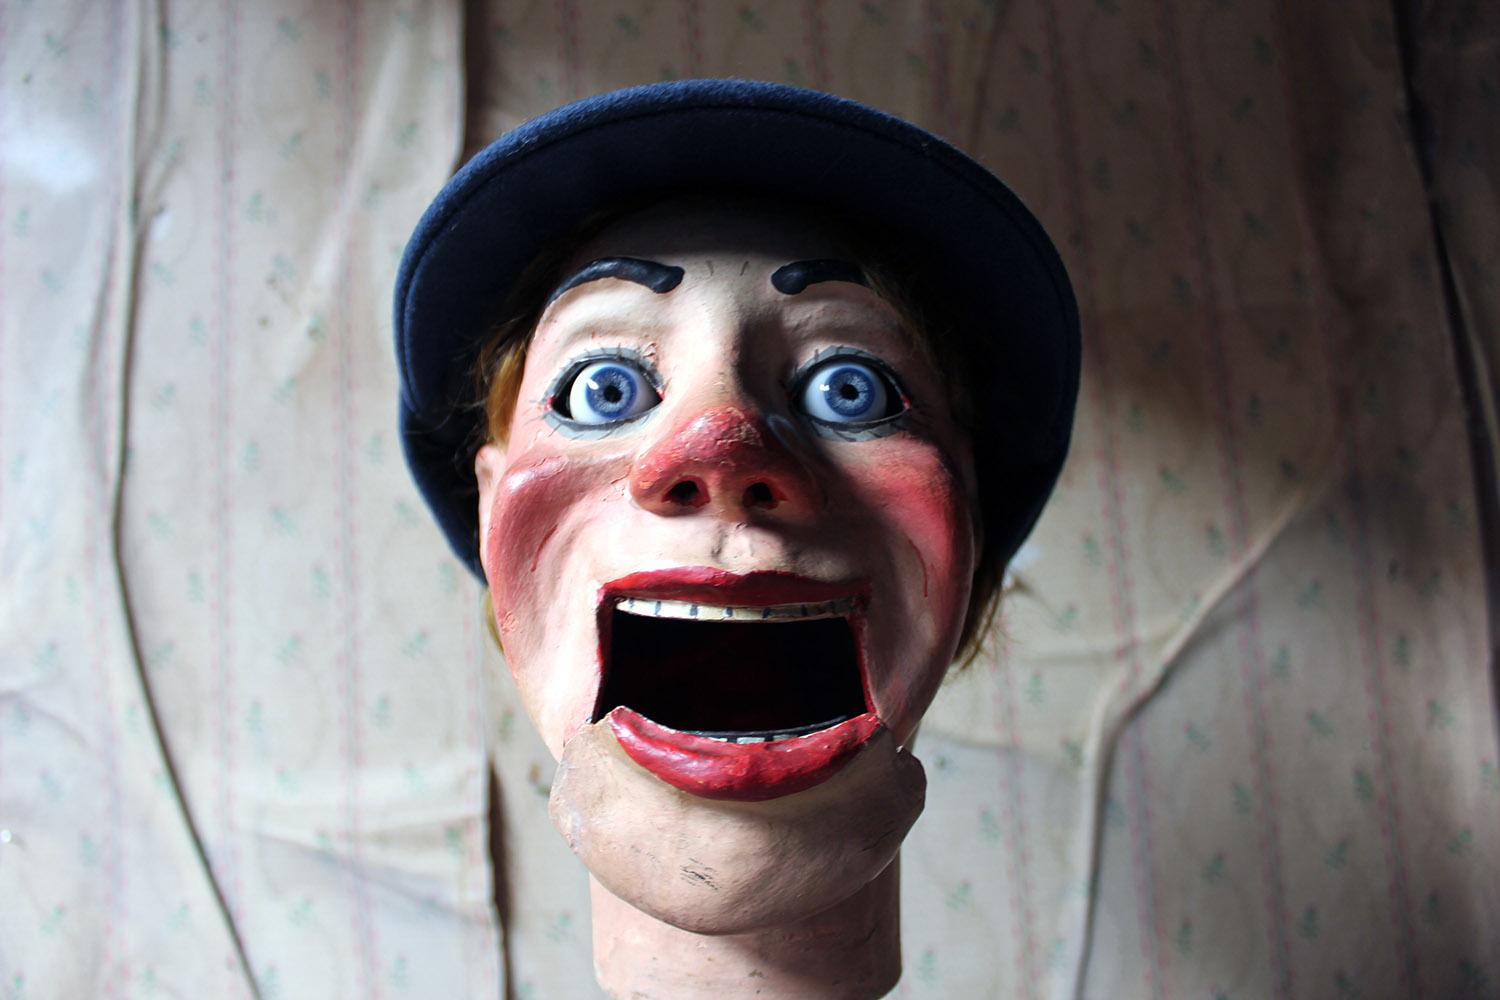 ventriloquist dummy case